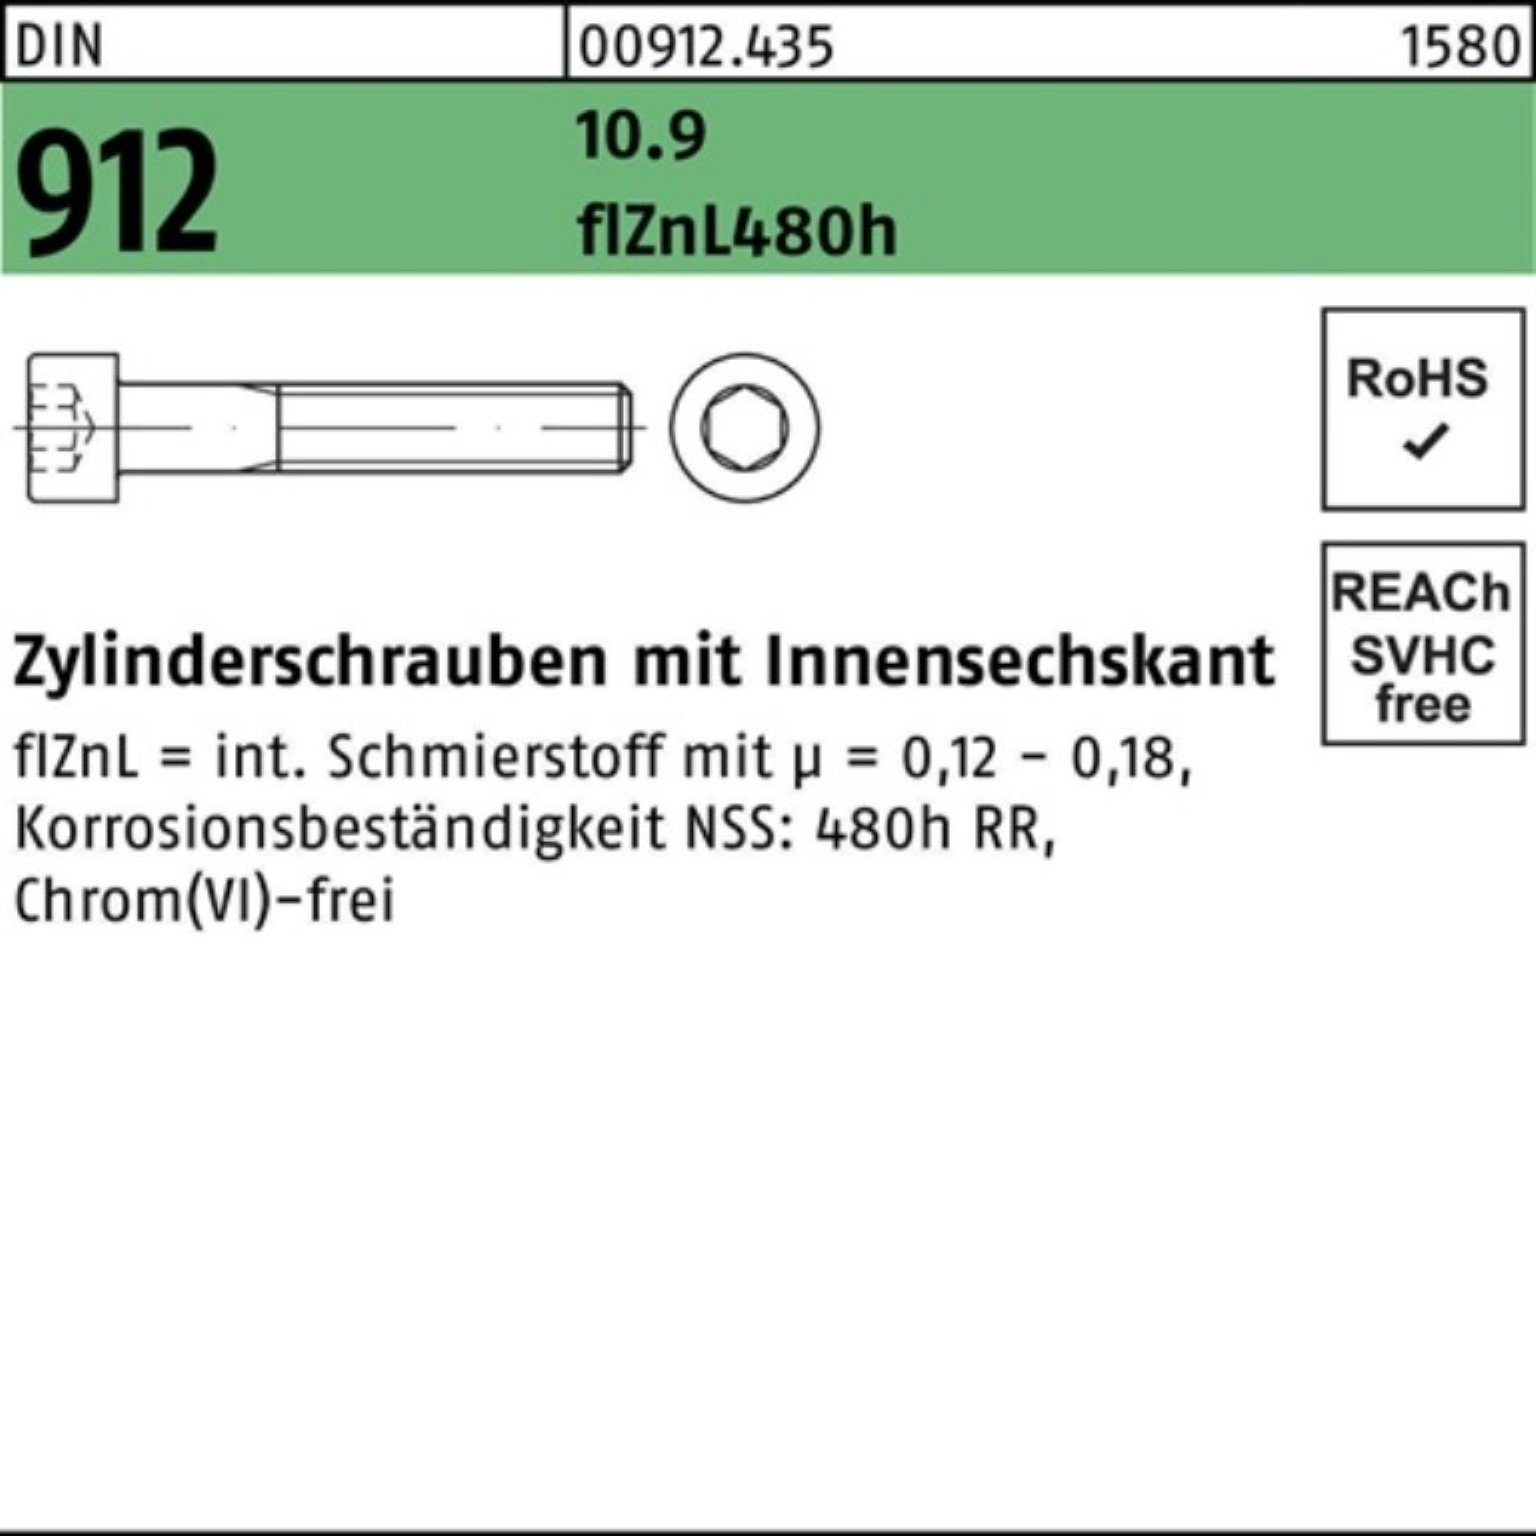 Reyher Zylinderschraube 100er Pack Zylinderschraube Innen-6kt flZnL/nc/x/x M8x90 DIN 912 10.9